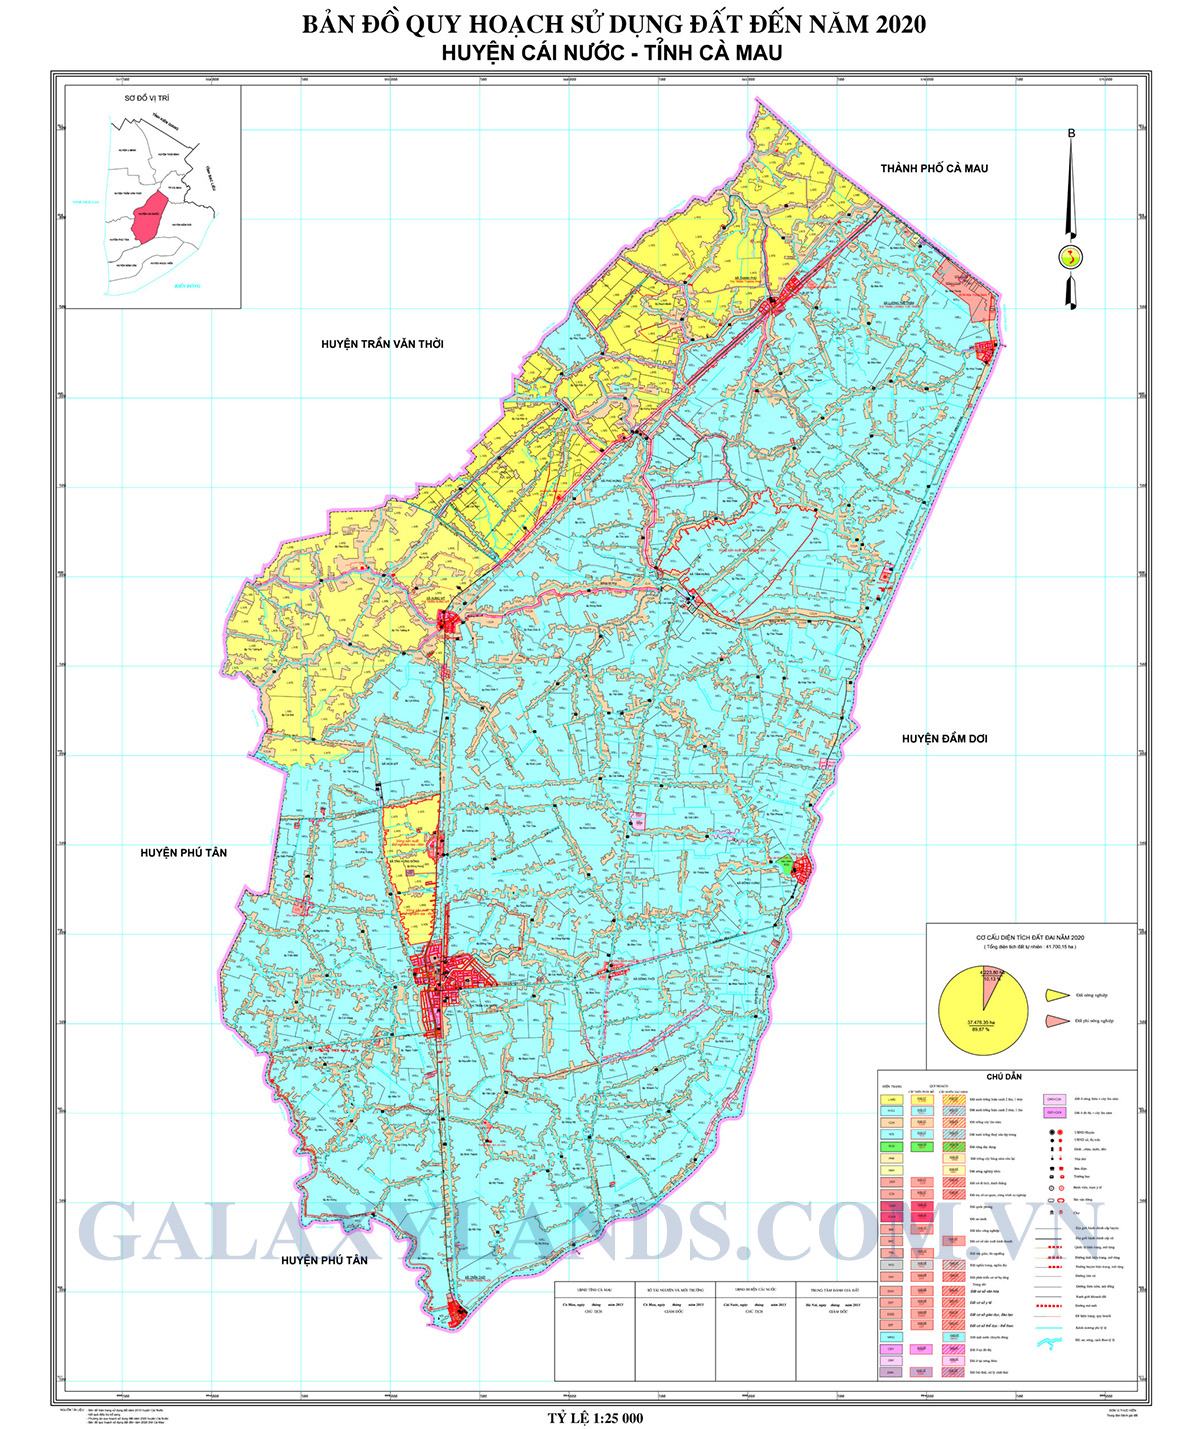 Bản đồ quy hoạch sử dụng đất huyện Cái Nước tỉnh Cà Mau - Bản đồ quy hoạch huyện Cái Nước Cà Mau